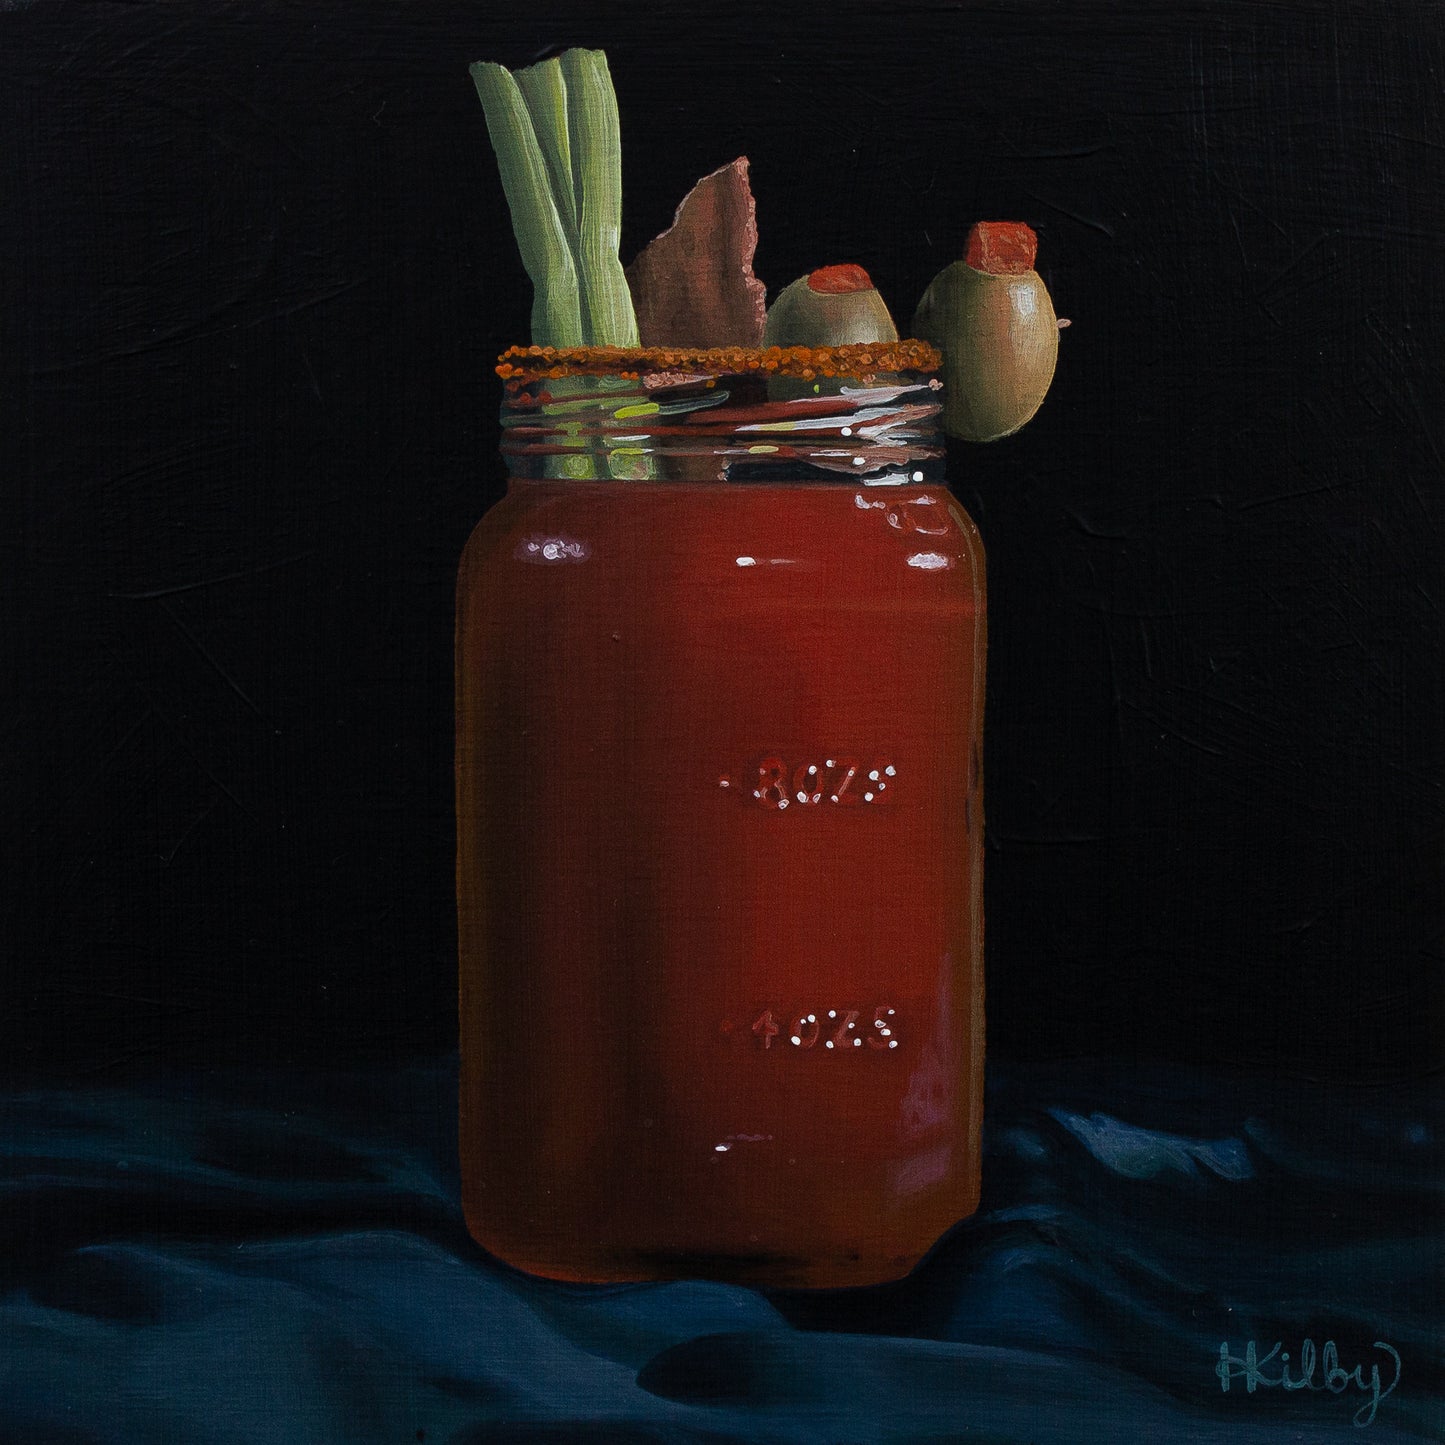 The original acrylic painting "Caesar" by Hannah Kilby from Hannah Michelle Studios.